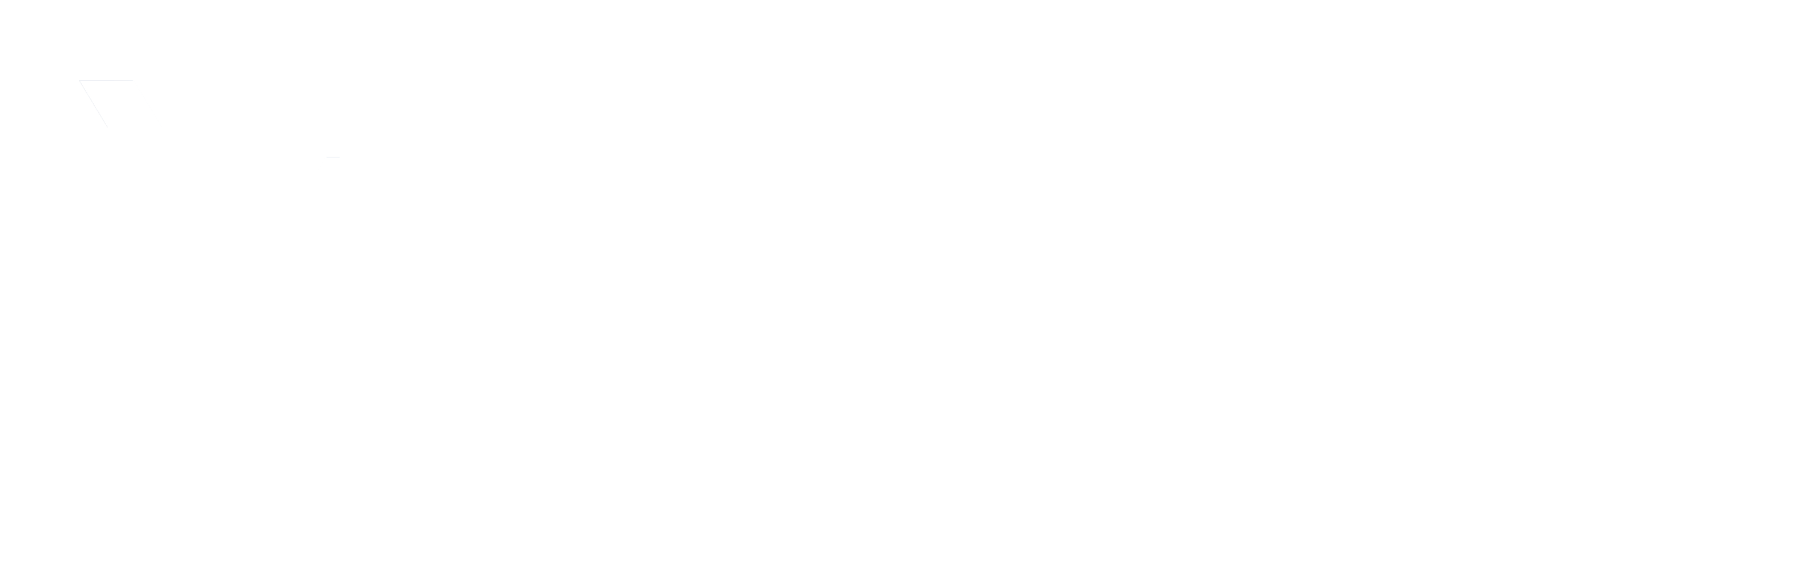 Genatt V Insurance Solutions